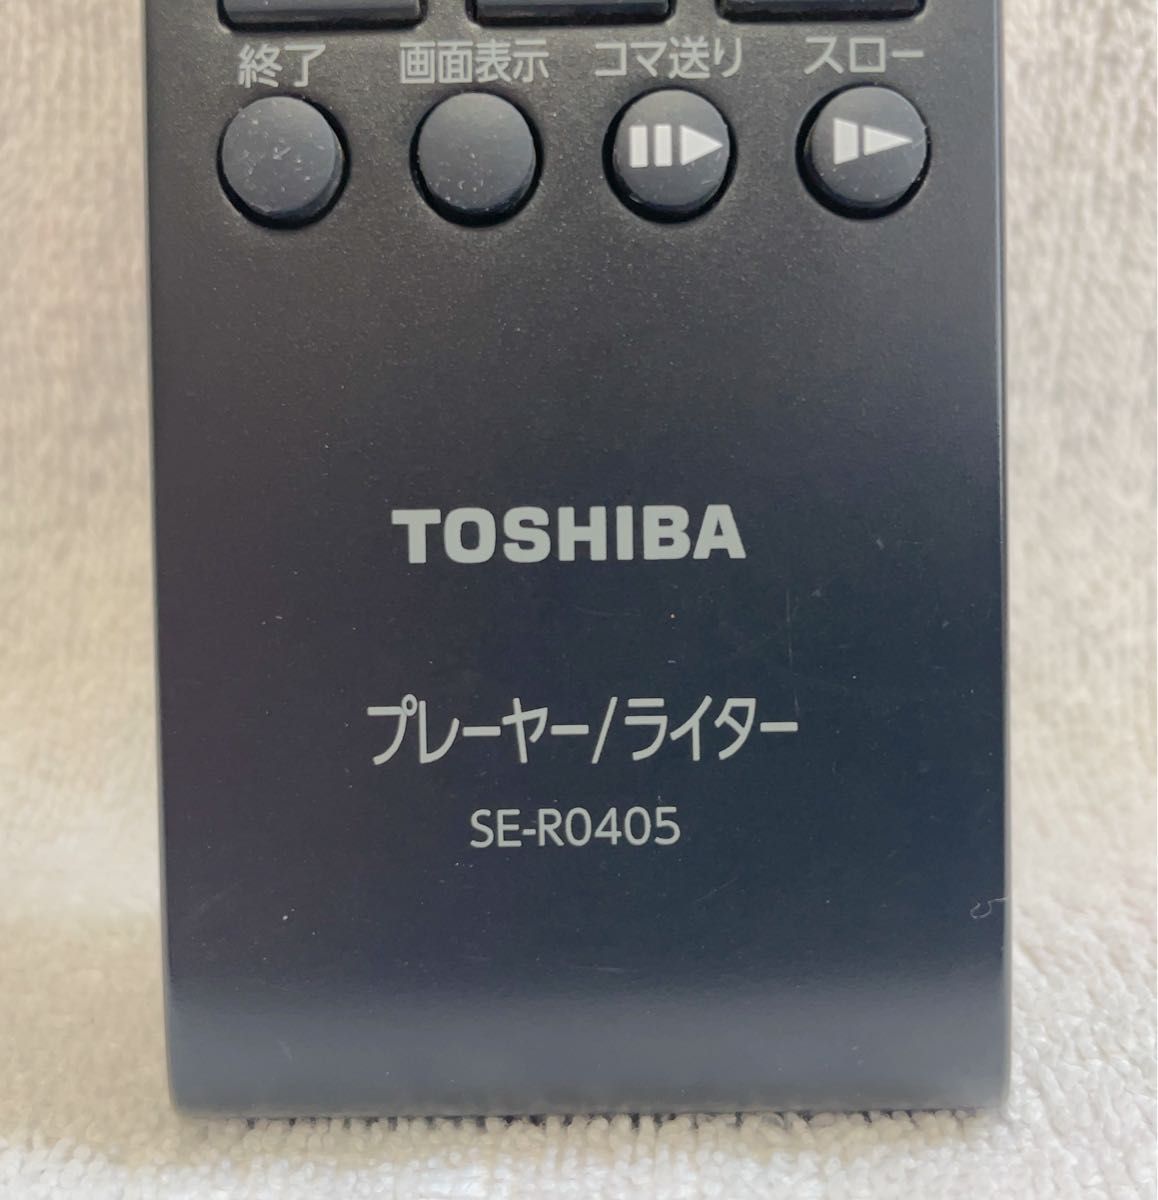 【ほぼ未使用】【美品】【送料無料】東芝(TOSHIBA) 純正DVDレコーダー用リモコン SE-R0405